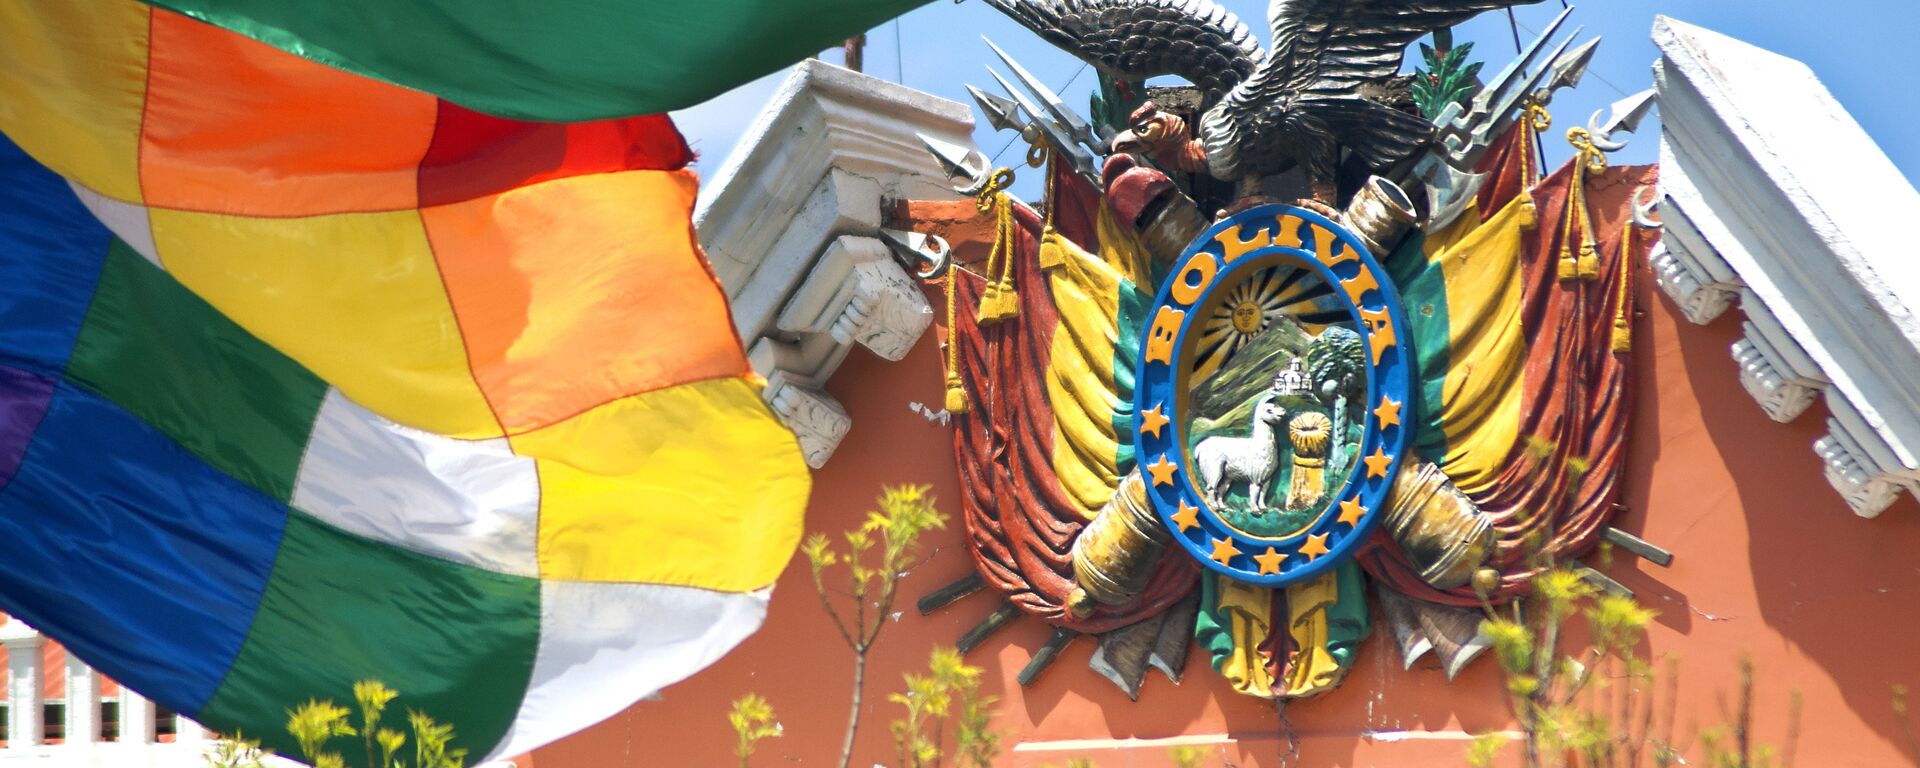 Escudo de Bolivia en el Palacio de Gobierno - Sputnik Mundo, 1920, 08.03.2021